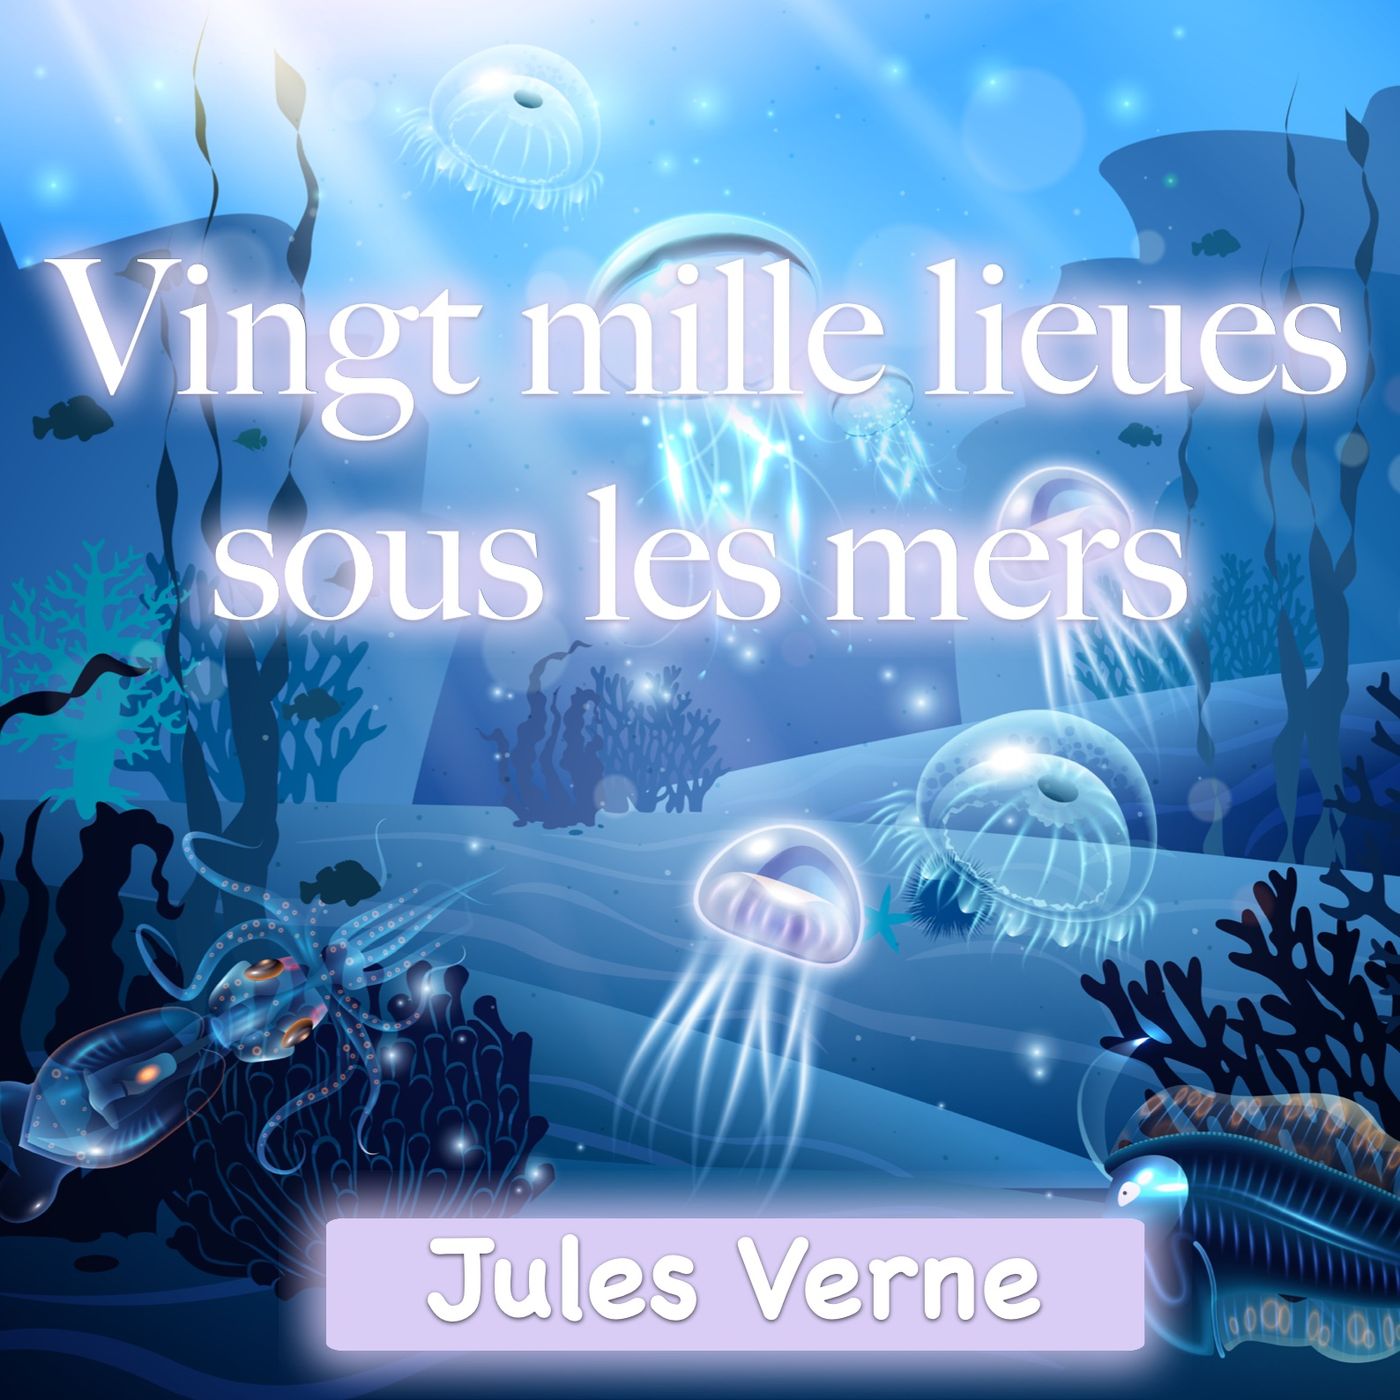 Vingt mille lieues sous les mers - Première partie - Chapitre 17 - Une forêt sous-marine -  Jules Verne